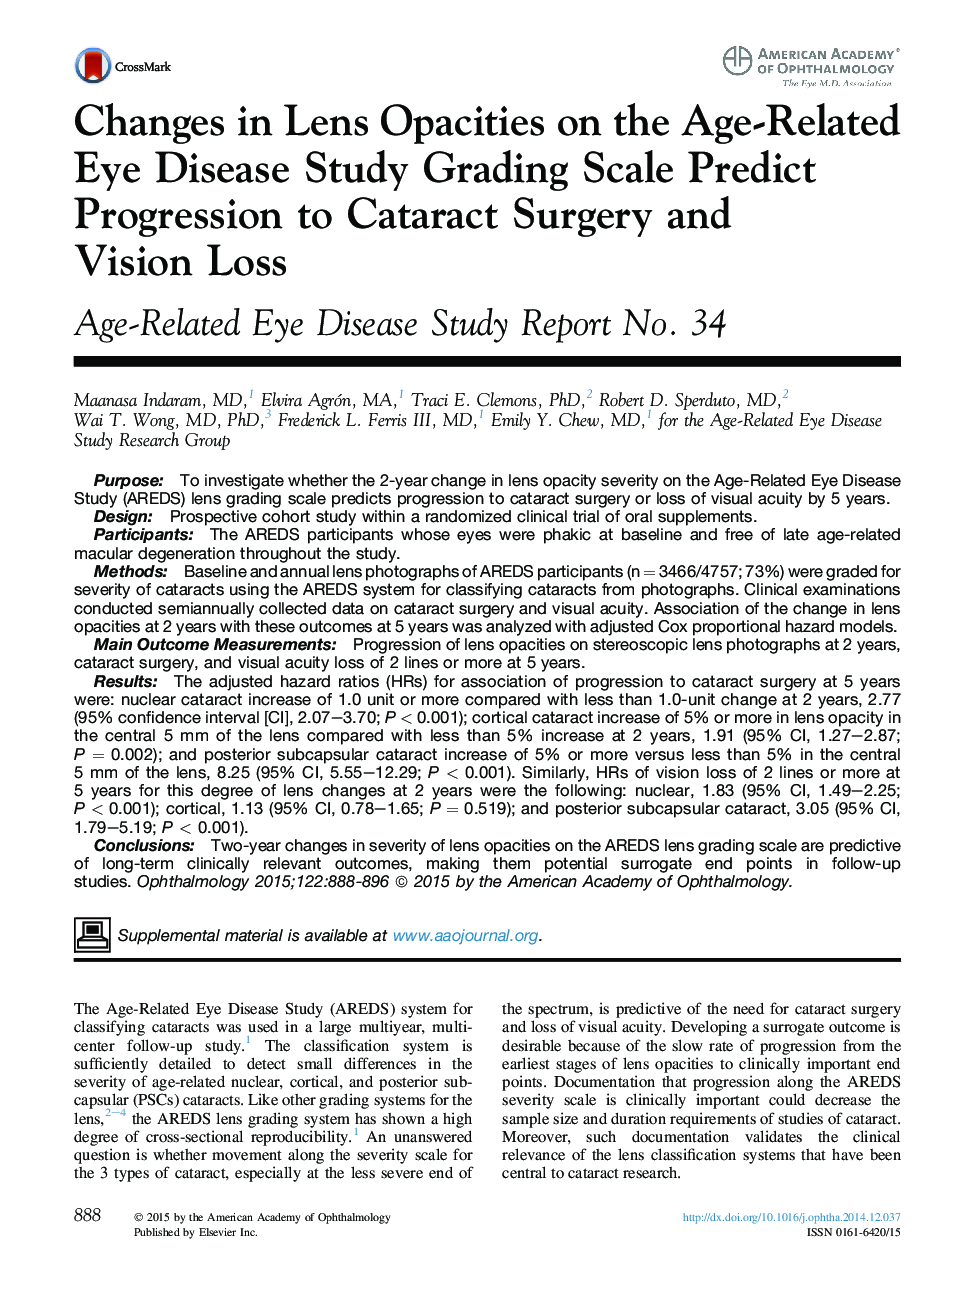 مقاله اصلی تغییرات در ابعاد لنز در مورد بیماری های مرتبط با بیماری چشم، مقیاس درجهبندی پیش بینی پیشرفت جراحی کاتاراکت و کاهش چشم انداز: گزارش مطالعه بیماری های مرتبط با سن، شماره 34 